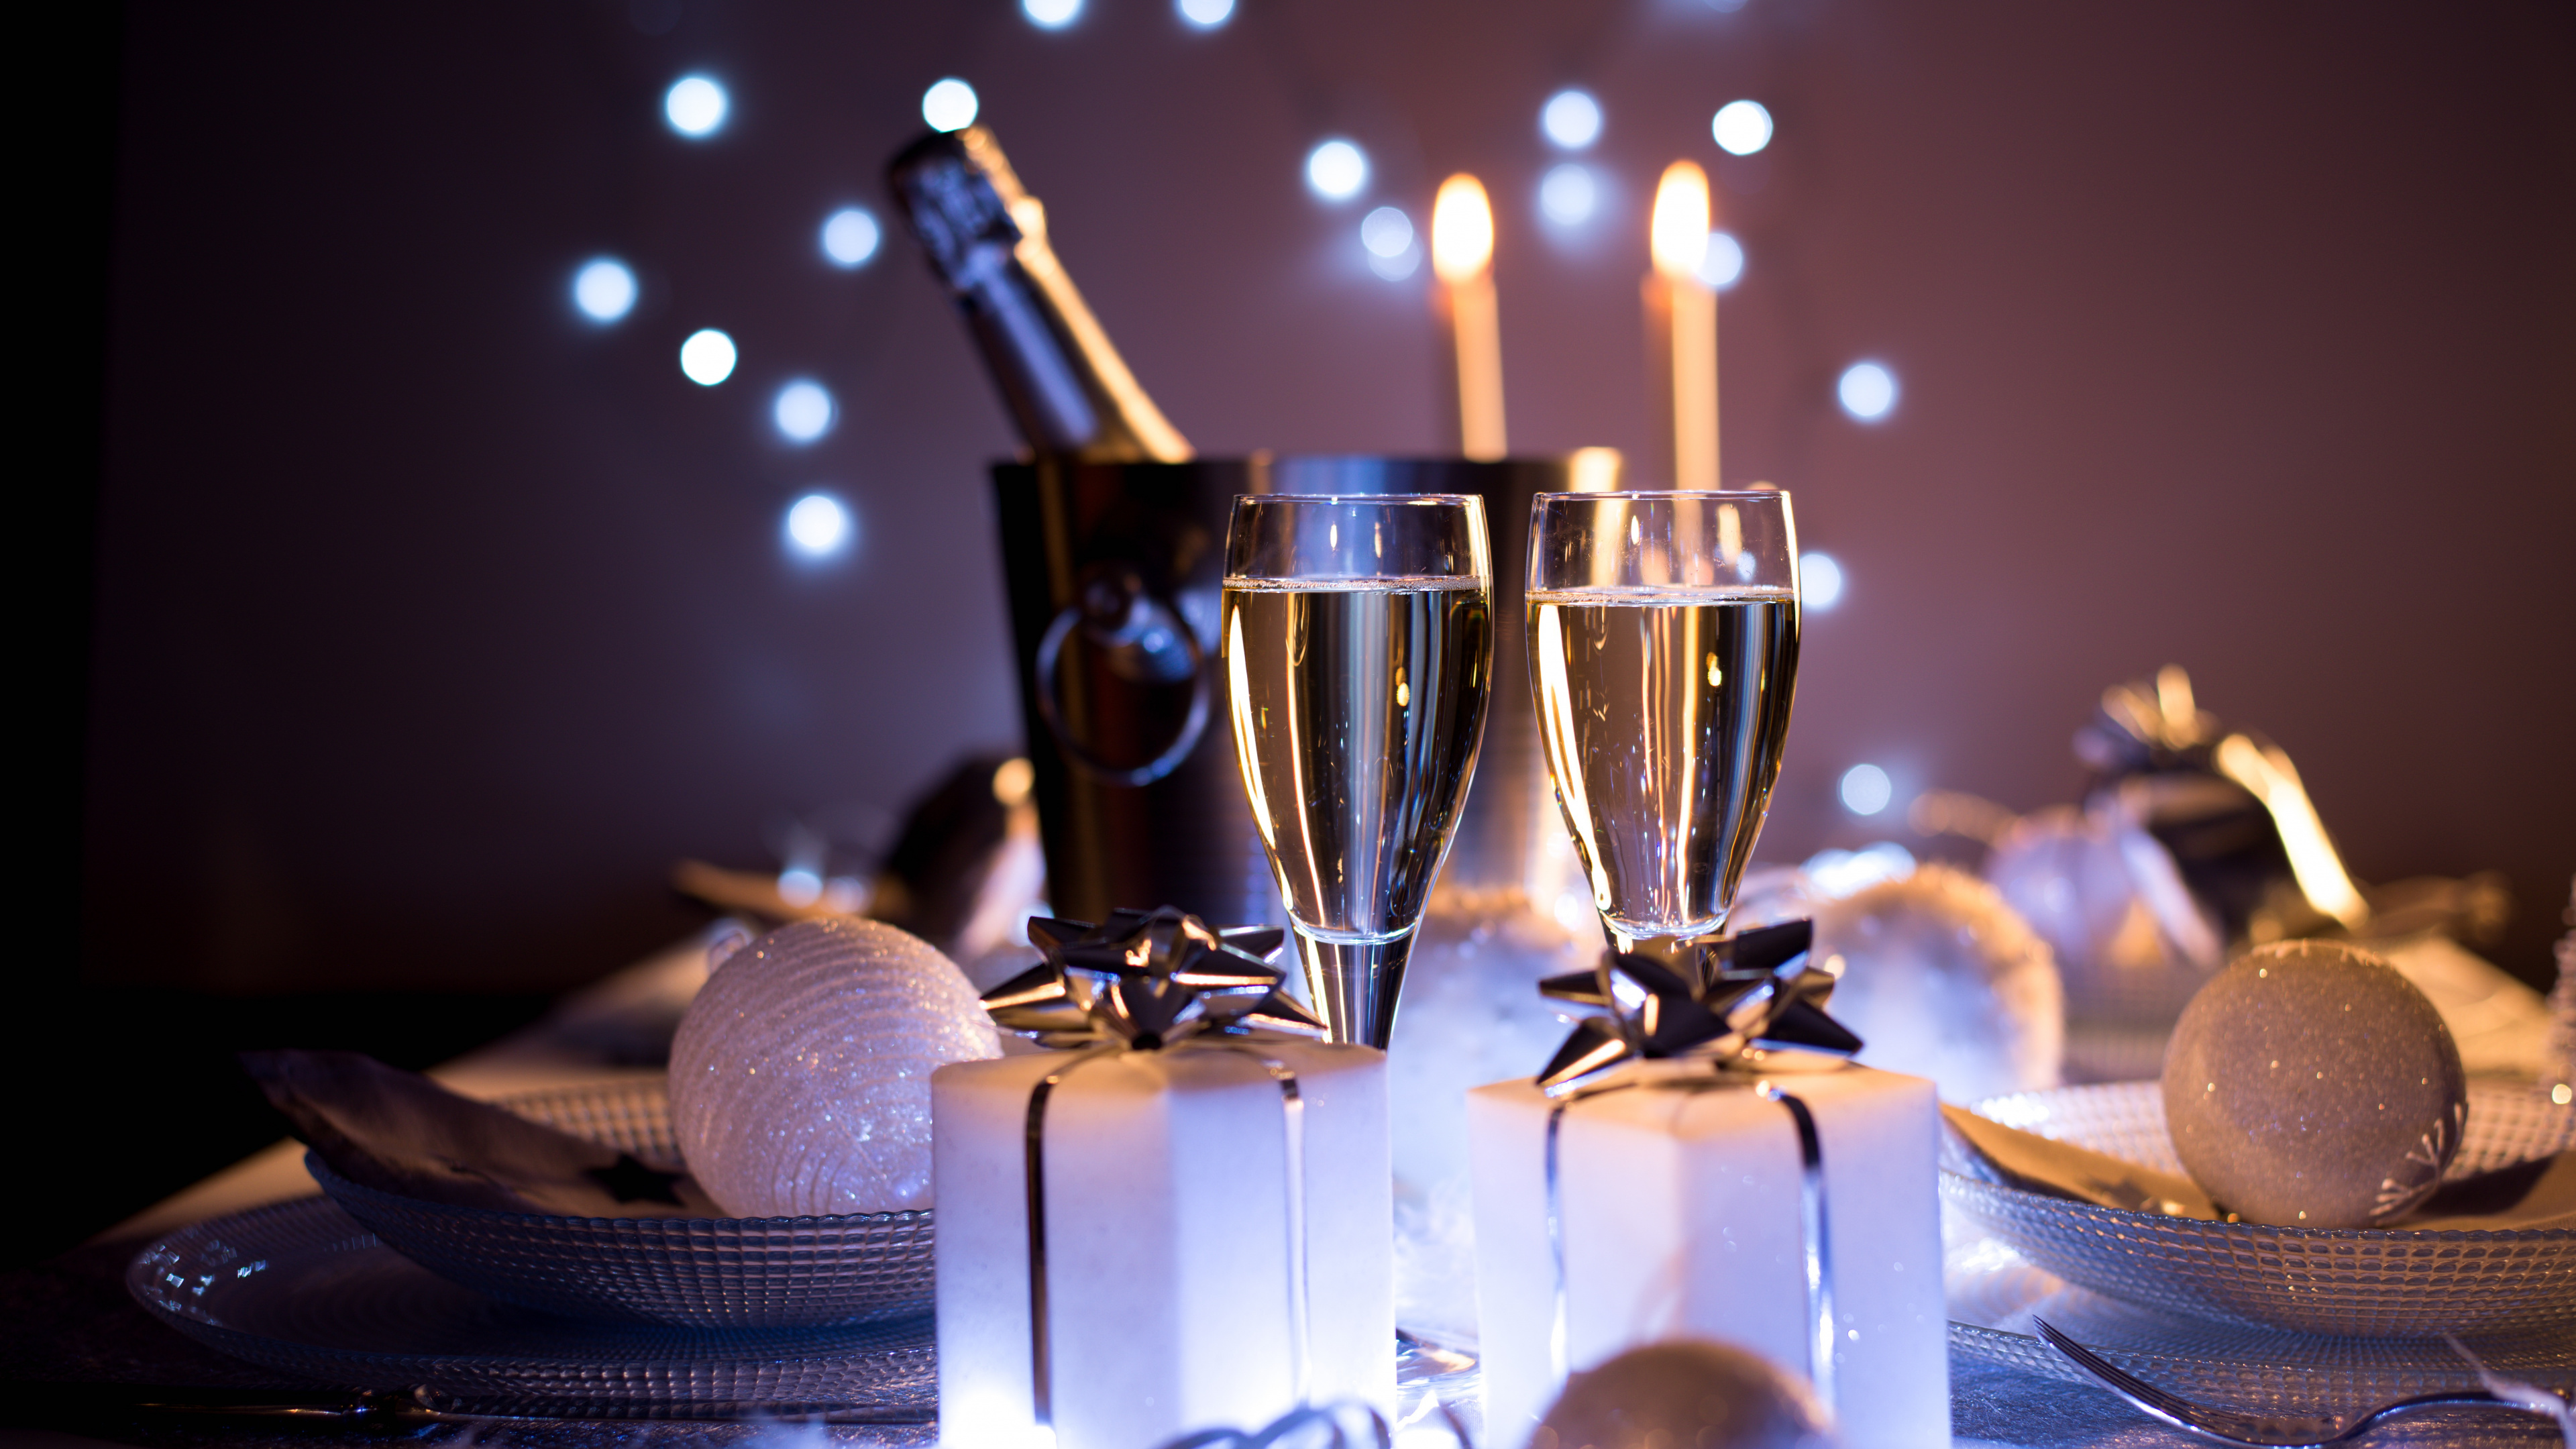 香槟, 葡萄酒, 新年前夕, 新的一年, 仍然生活 壁纸 3840x2160 允许